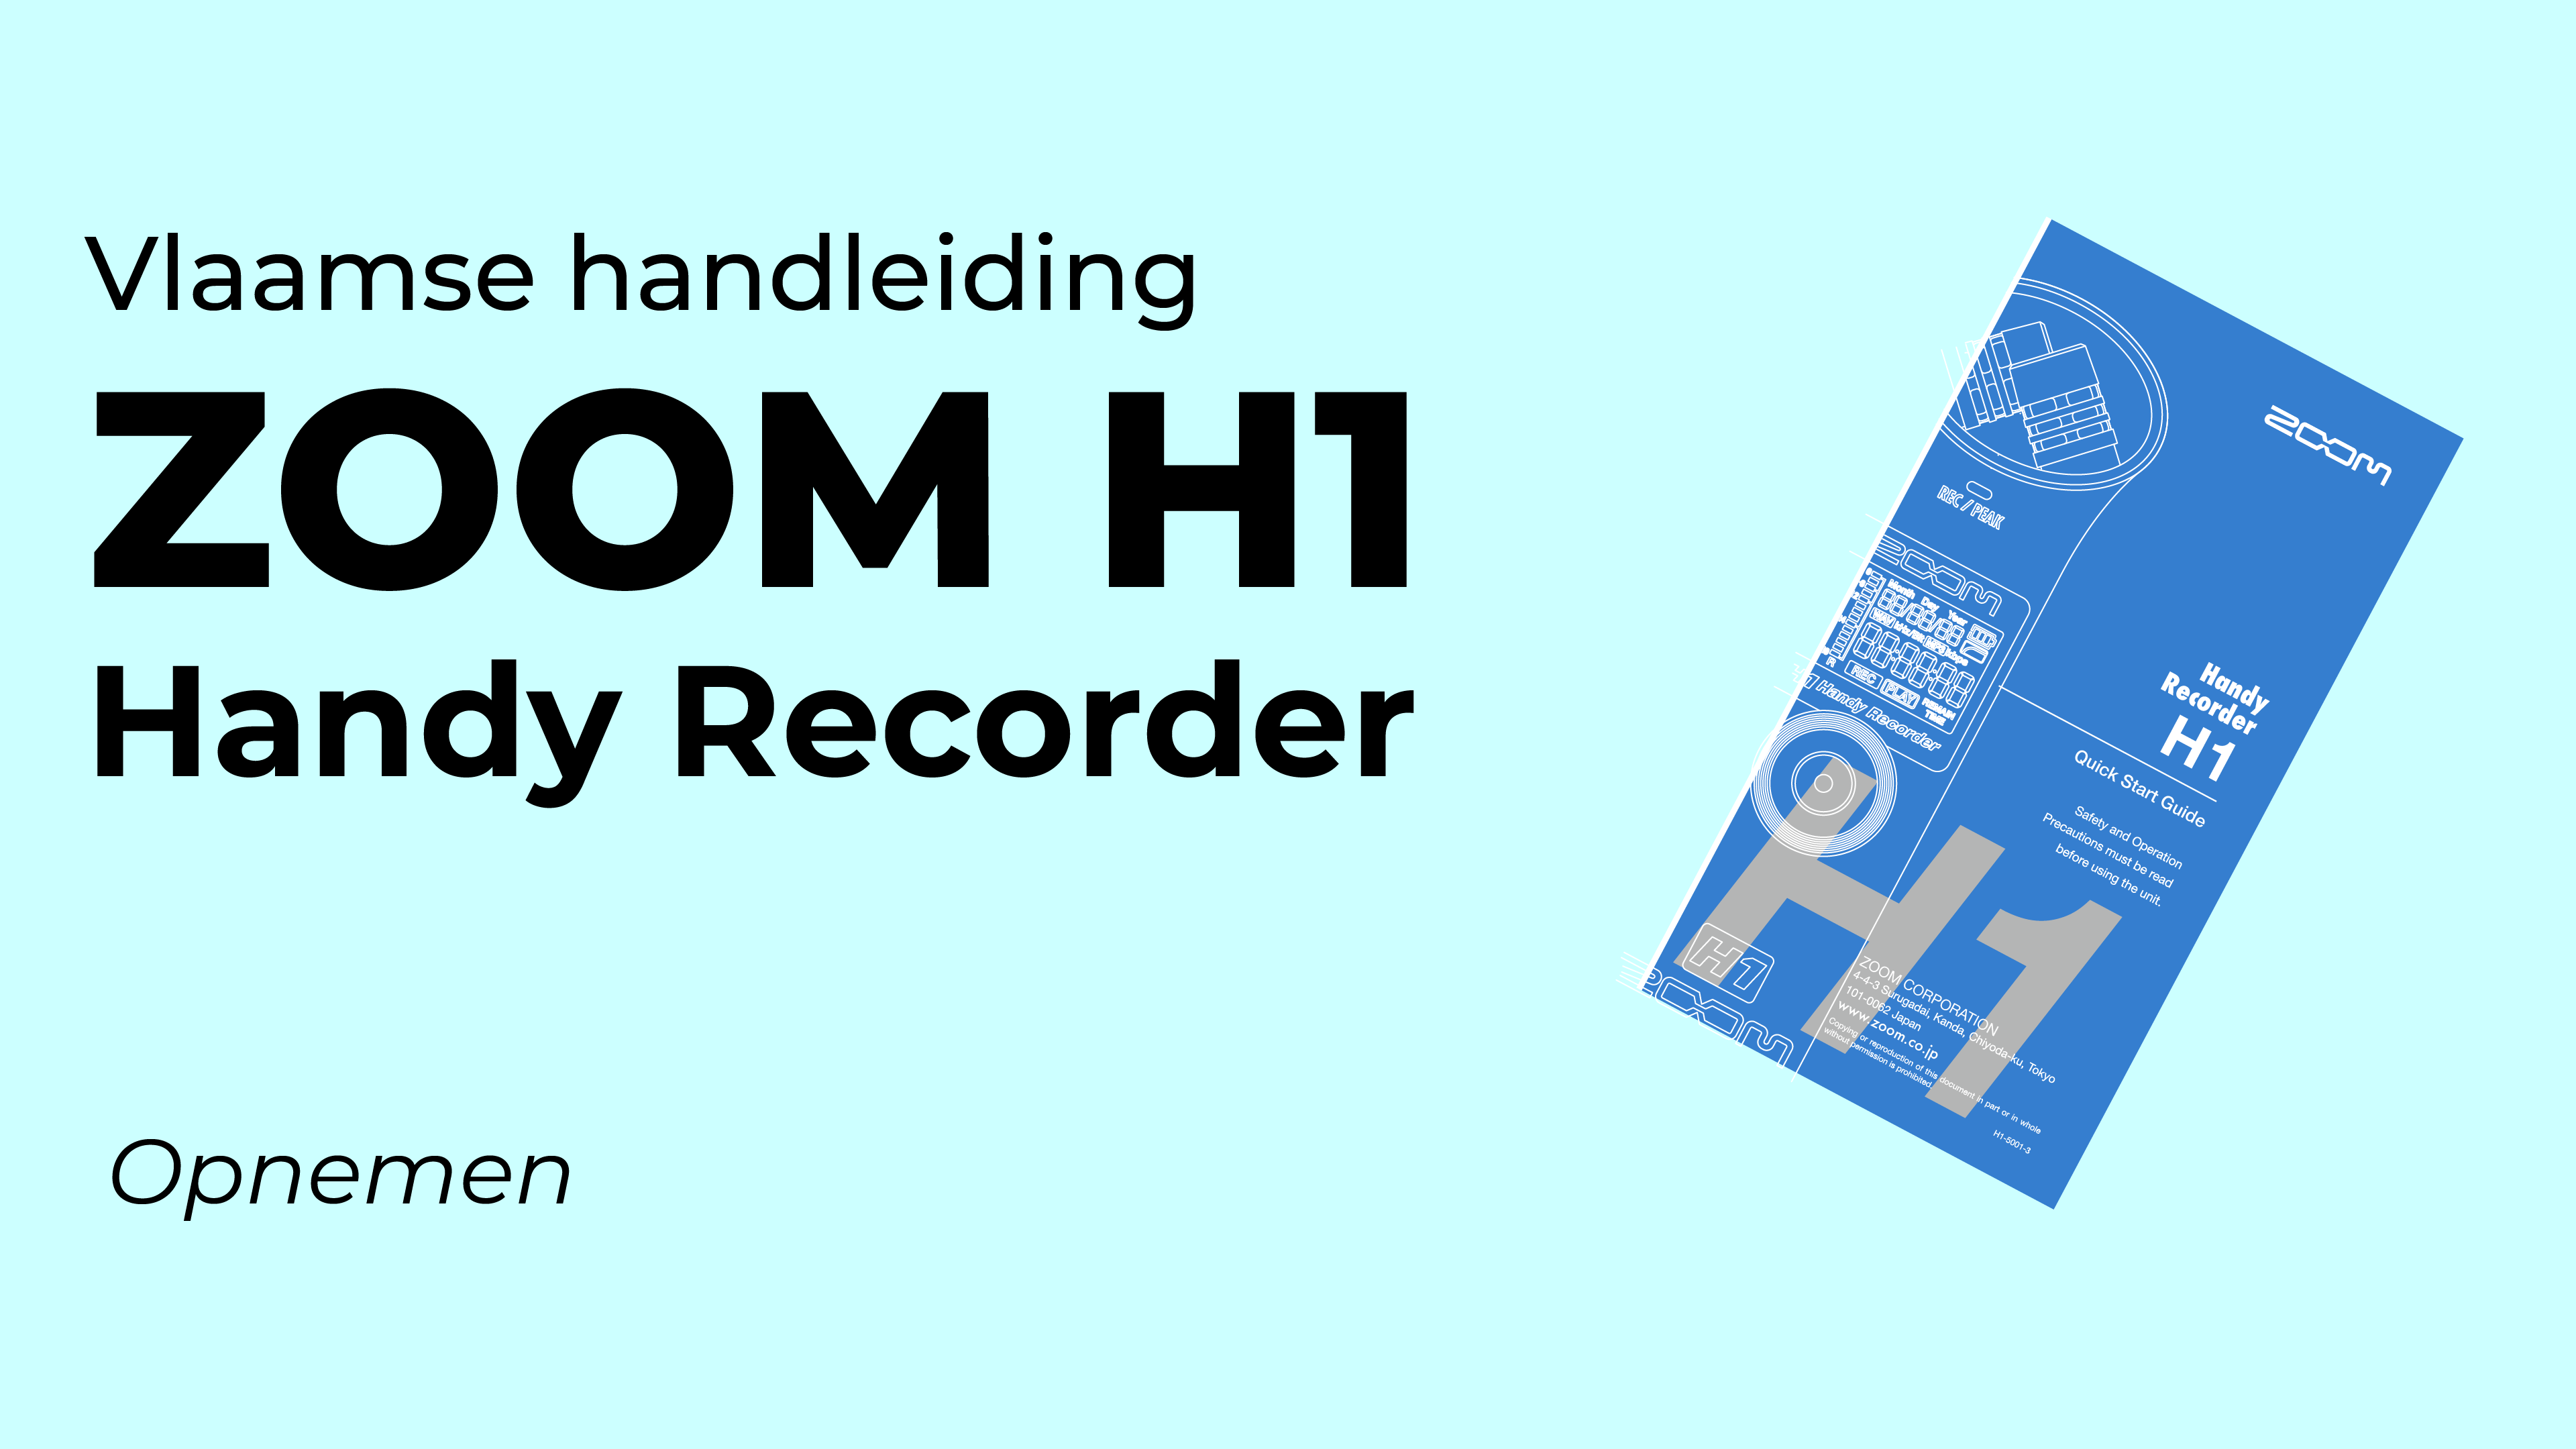 Vlaamse handleiding opnemen met de Zoom H1 recorder.